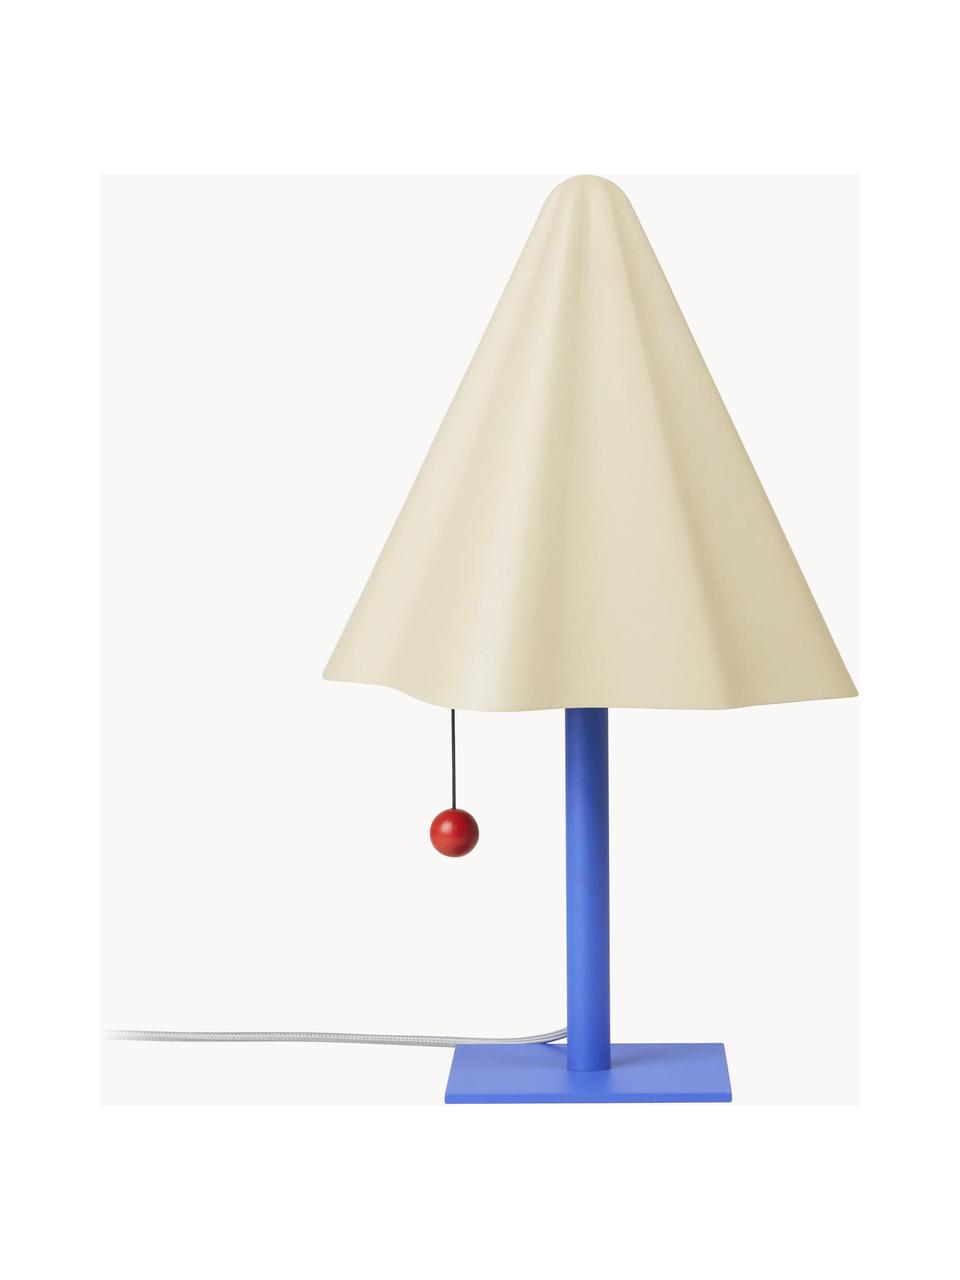 Design Tischlampe Skirt, Lampenschirm: Stahl, pulverbeschichtet, Lampenfuß: Stahl, pulverbeschichtet, Cremeweiß, Blau, Ø 30 x H 51 cm